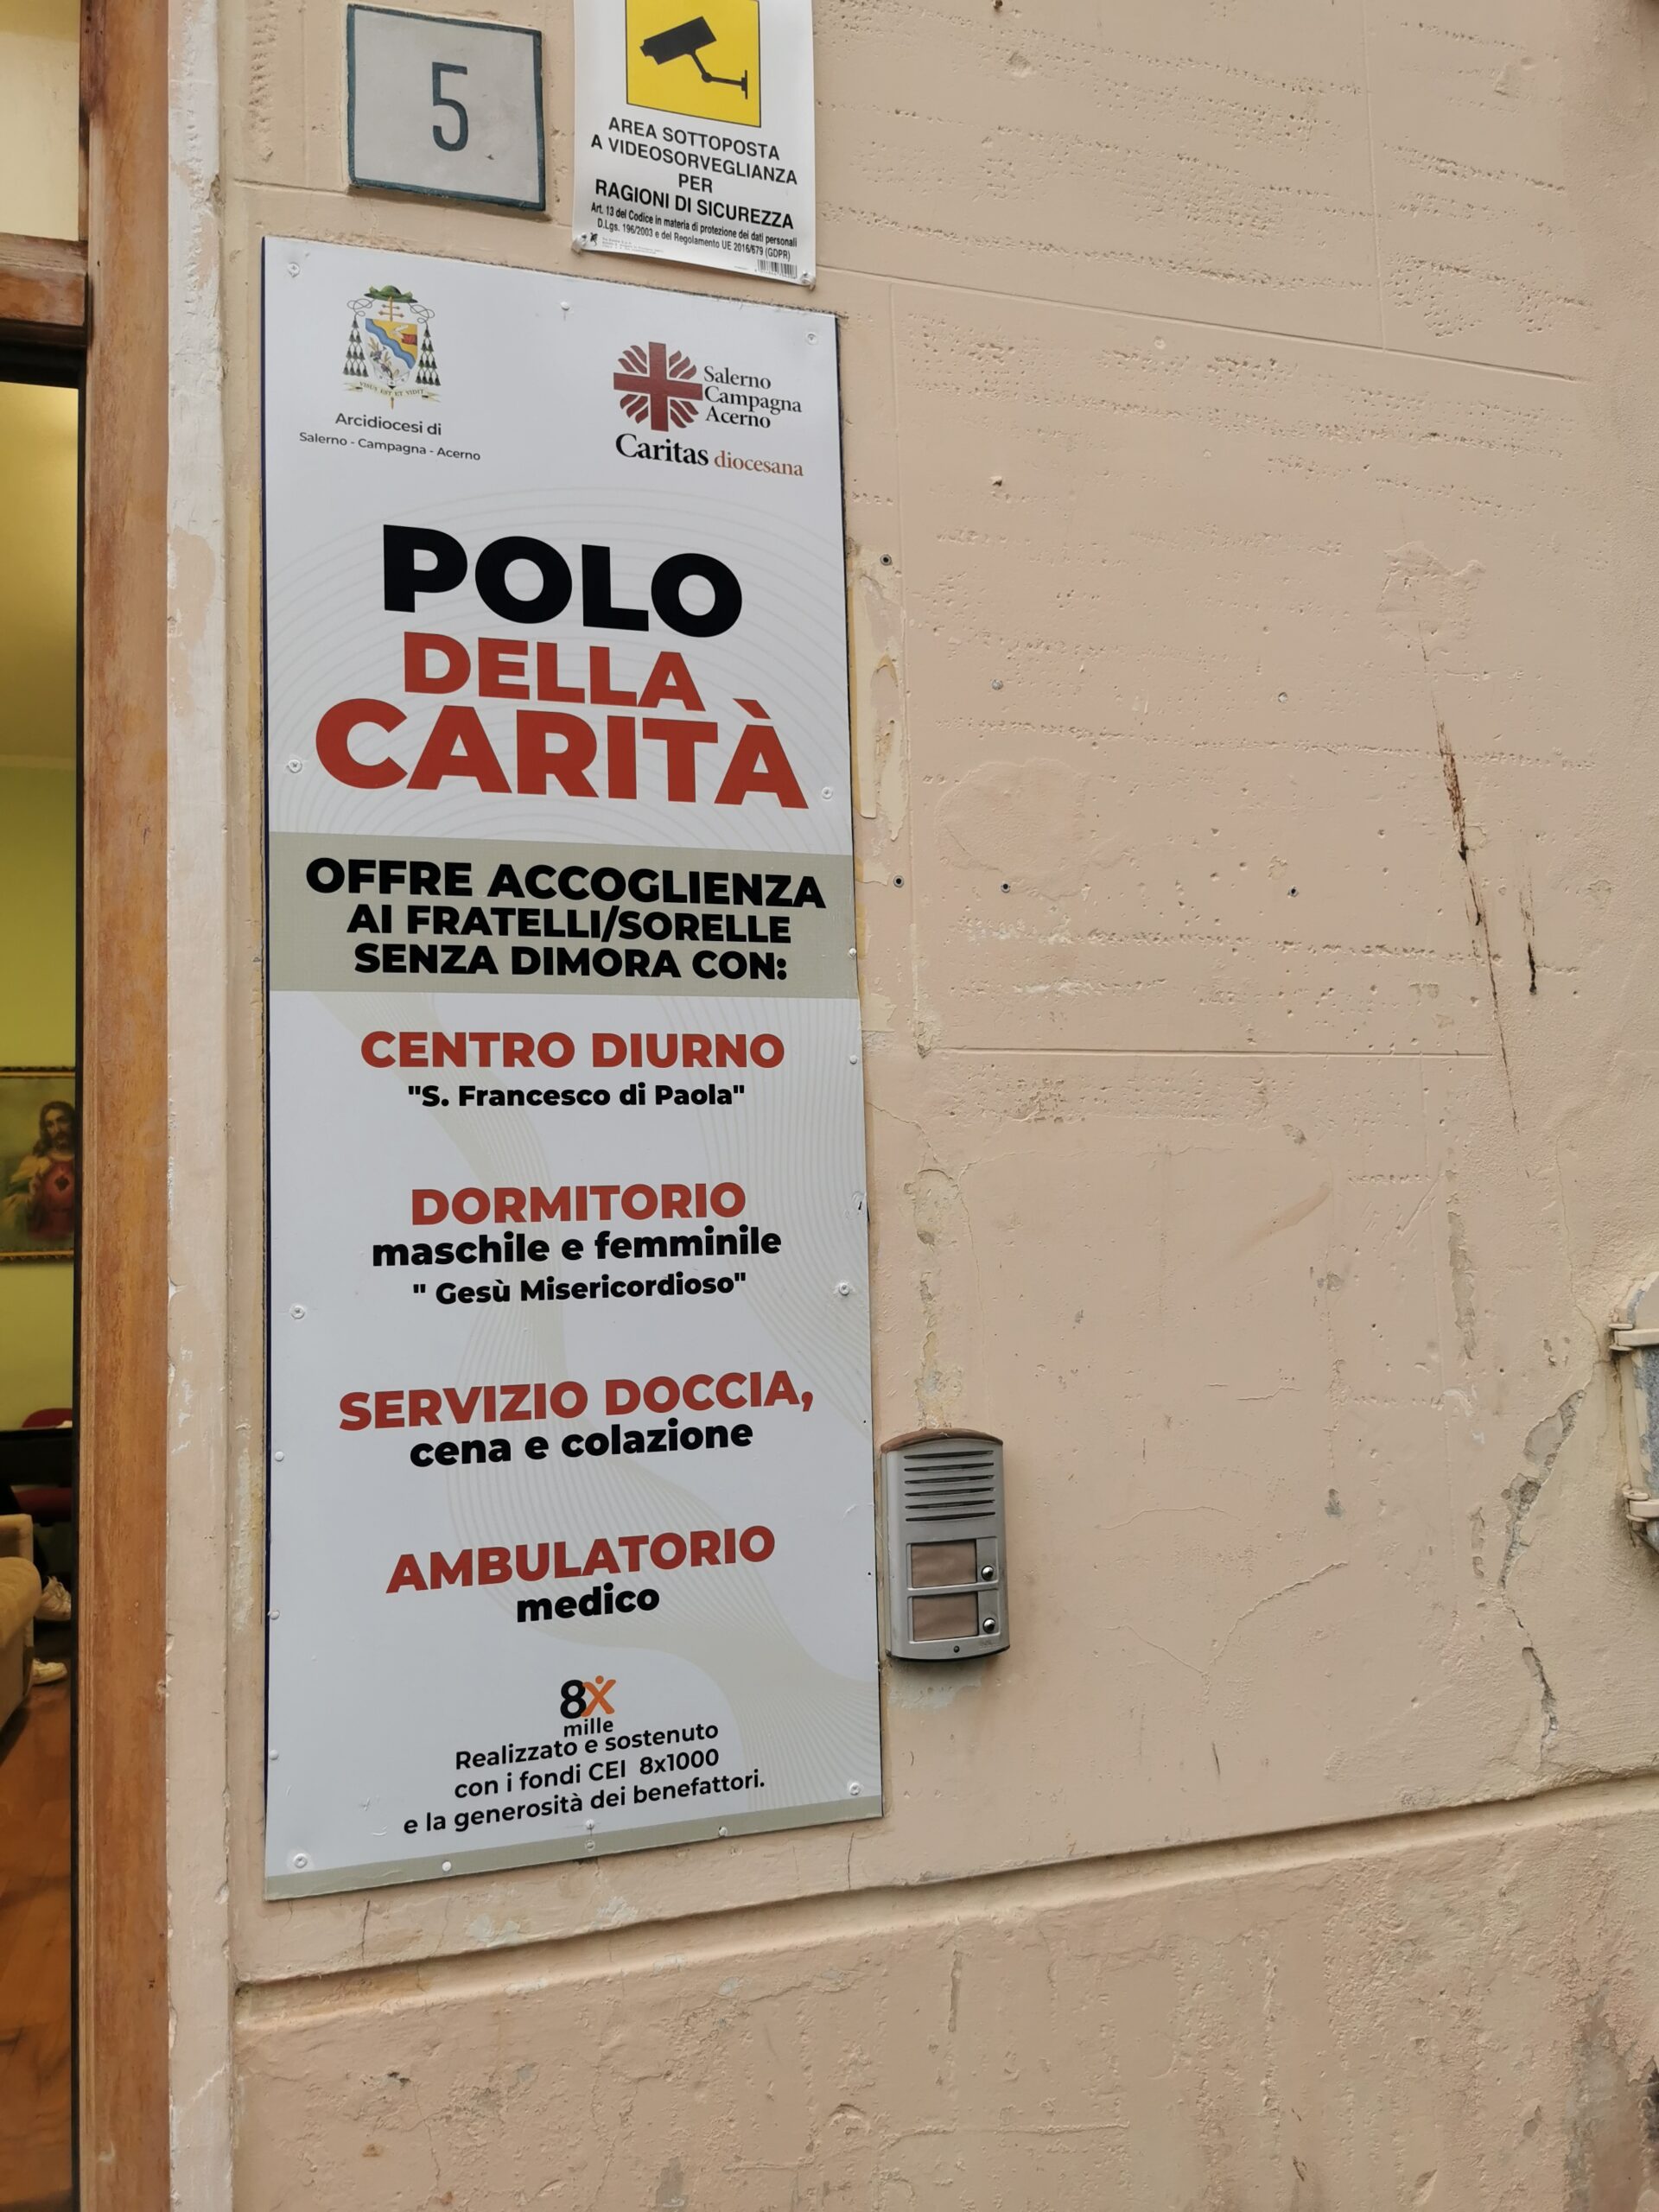 Salerno: organizzazione estiva servizi Caritas, chiusura dormitorio e spostamento temporaneo servizio Mensa